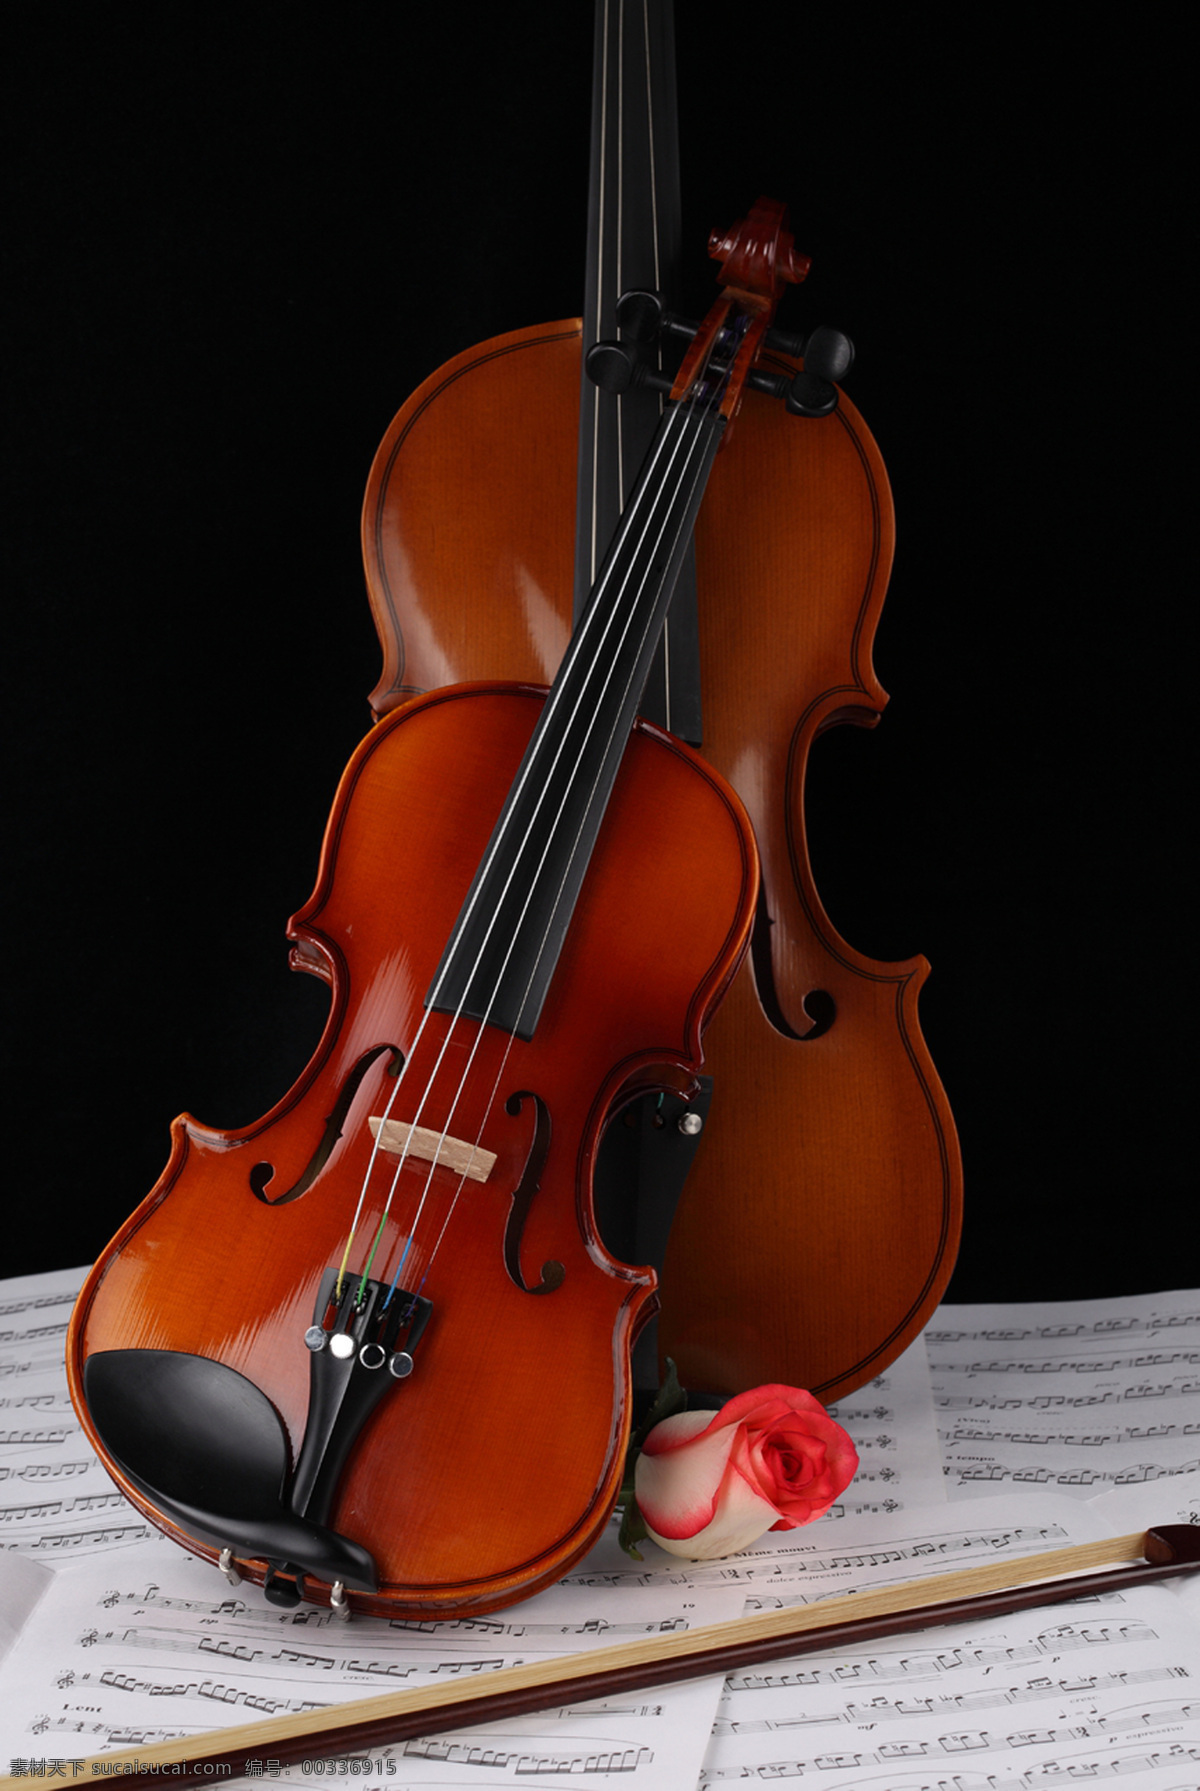 小提琴 乐器 乐谱 小提琴素材 高清图片 jpg图库 摄影图片 小提琴图片 高清 小提琴图库 小提琴特写 全身 影音娱乐 生活百科 黑色